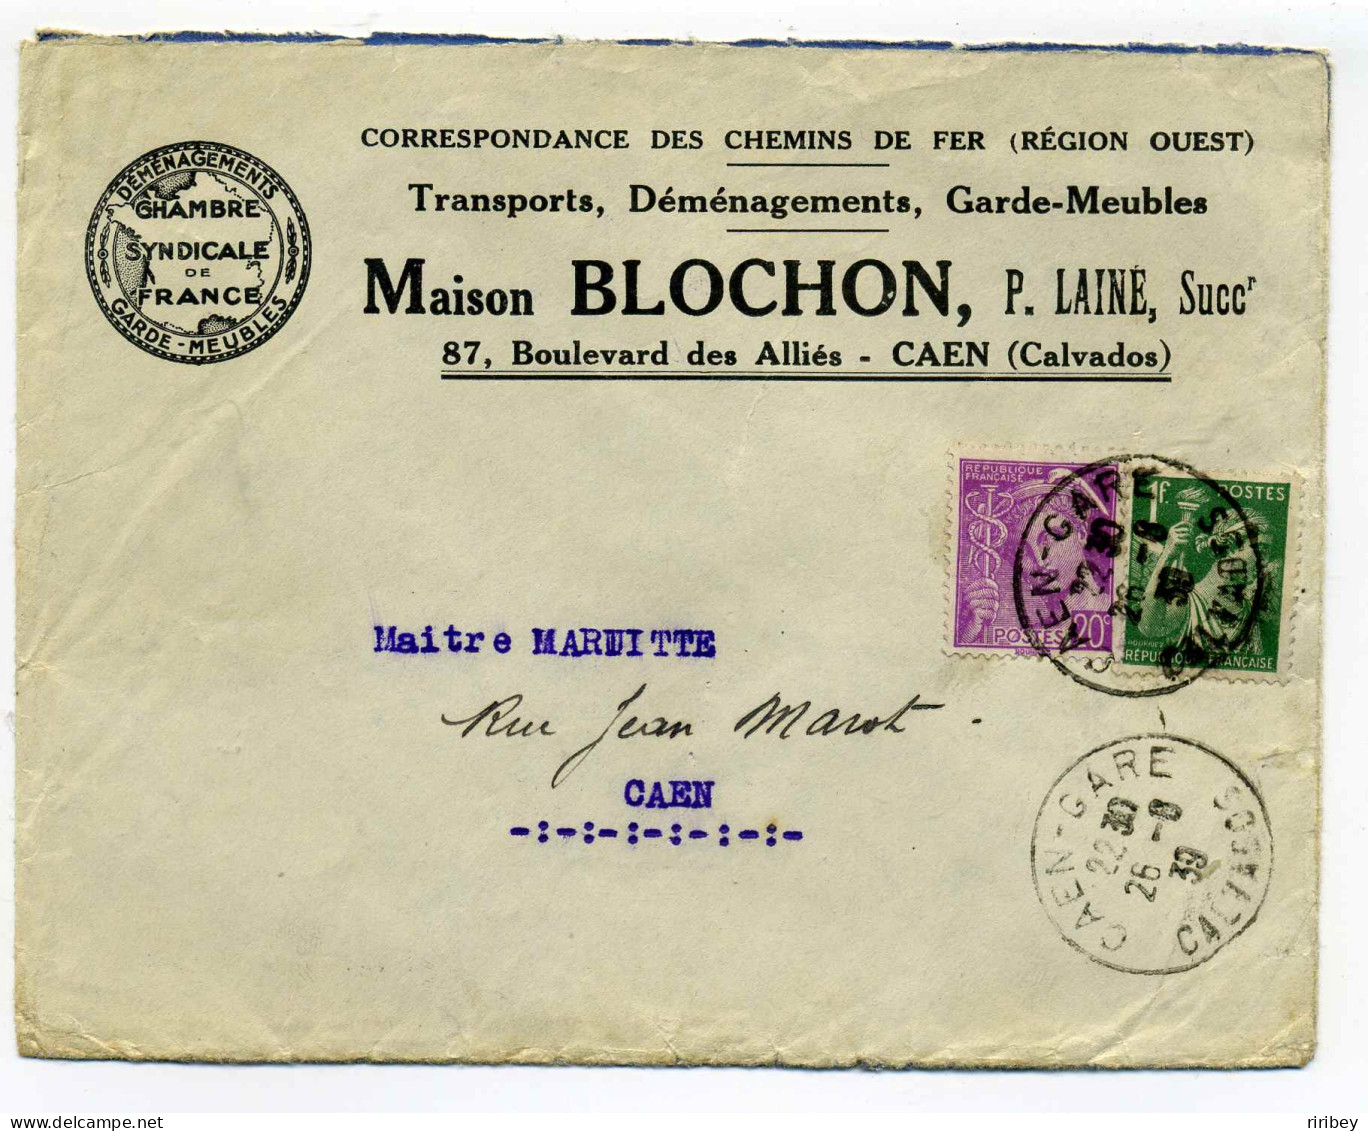 Env Publicitaire /DEMENAGEMENT Chambre Syndicale De France / Maison BLOCHON-Caen Calvados / 1939 - 1921-1960: Periodo Moderno